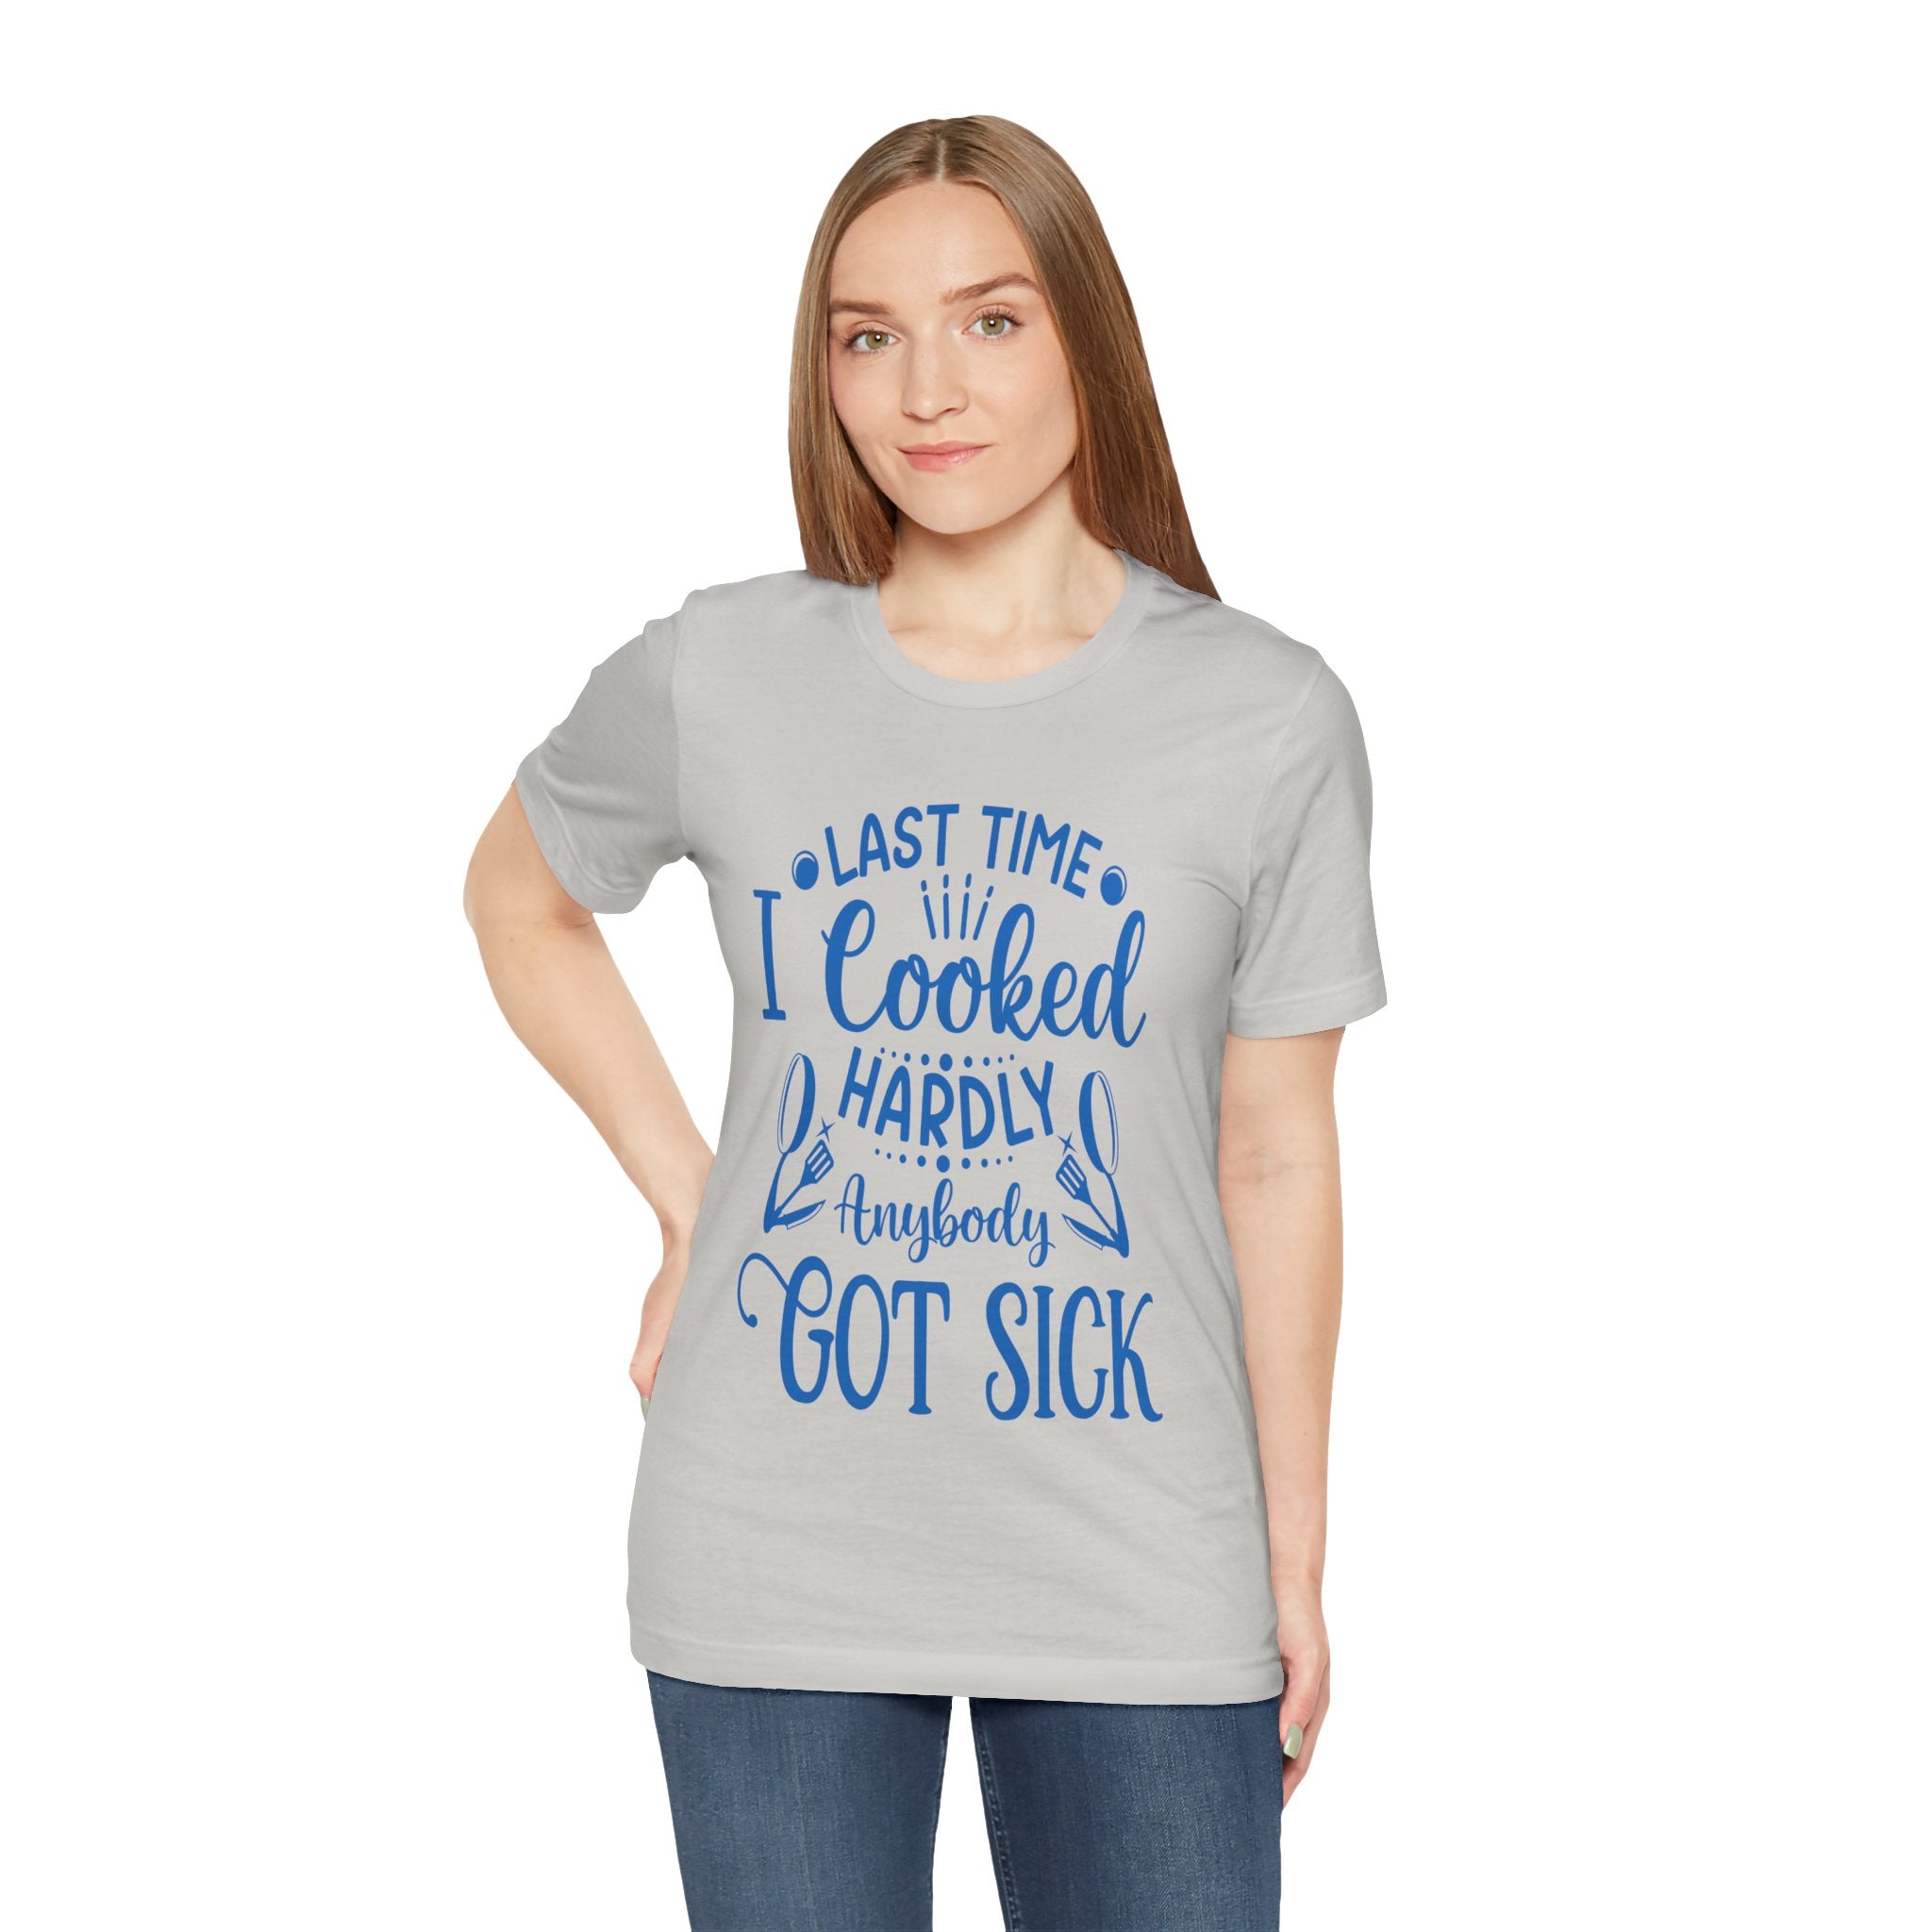 Cooking Expert Tee Shirt